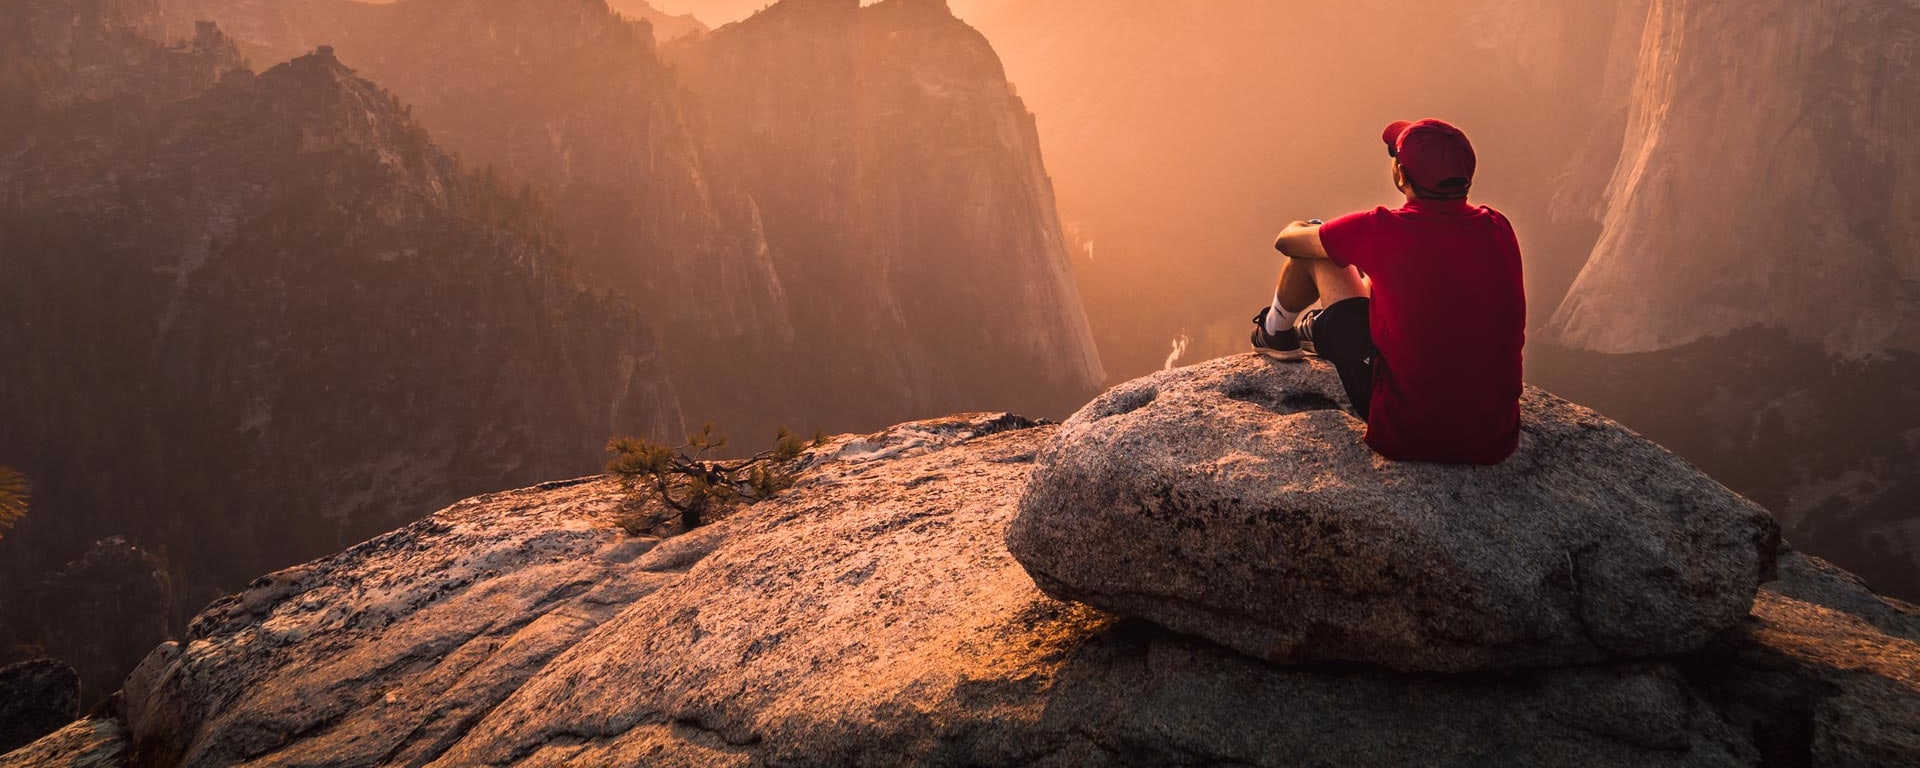 Ein Mann mit roter Kappe sitzt auf einem Felsvorsprung und schaut sich den Sonnenuntergang an.